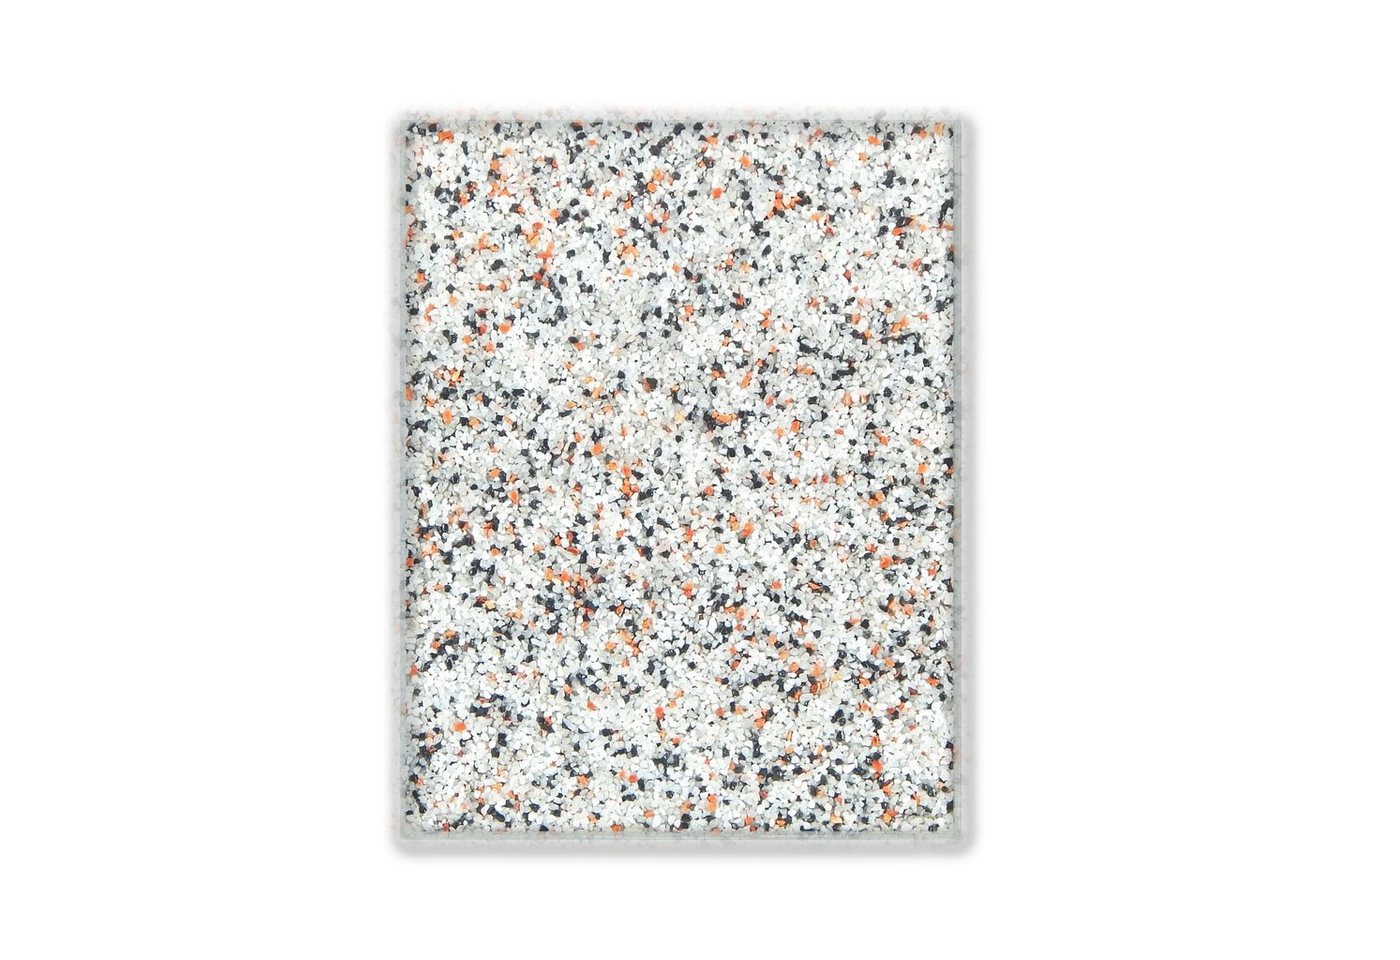 Terralith® Designboden Farbmuster Kompaktboden -mix palermo-, Originalware aus der Charge, die wir in diesem Moment im Abverkauf haben. von Terralith®